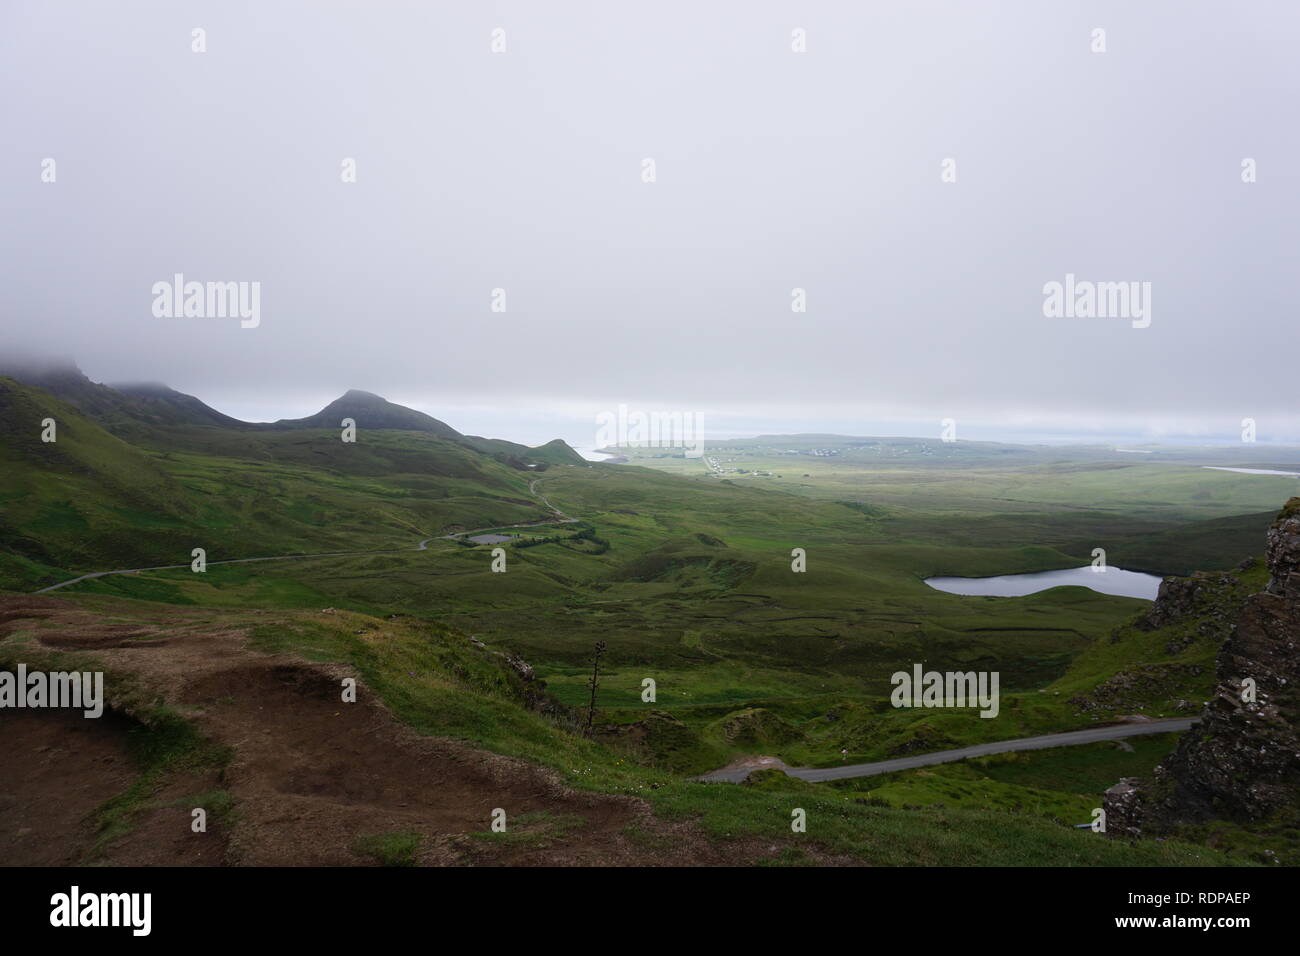 Landscape of the Scottish Highlands Stock Photo